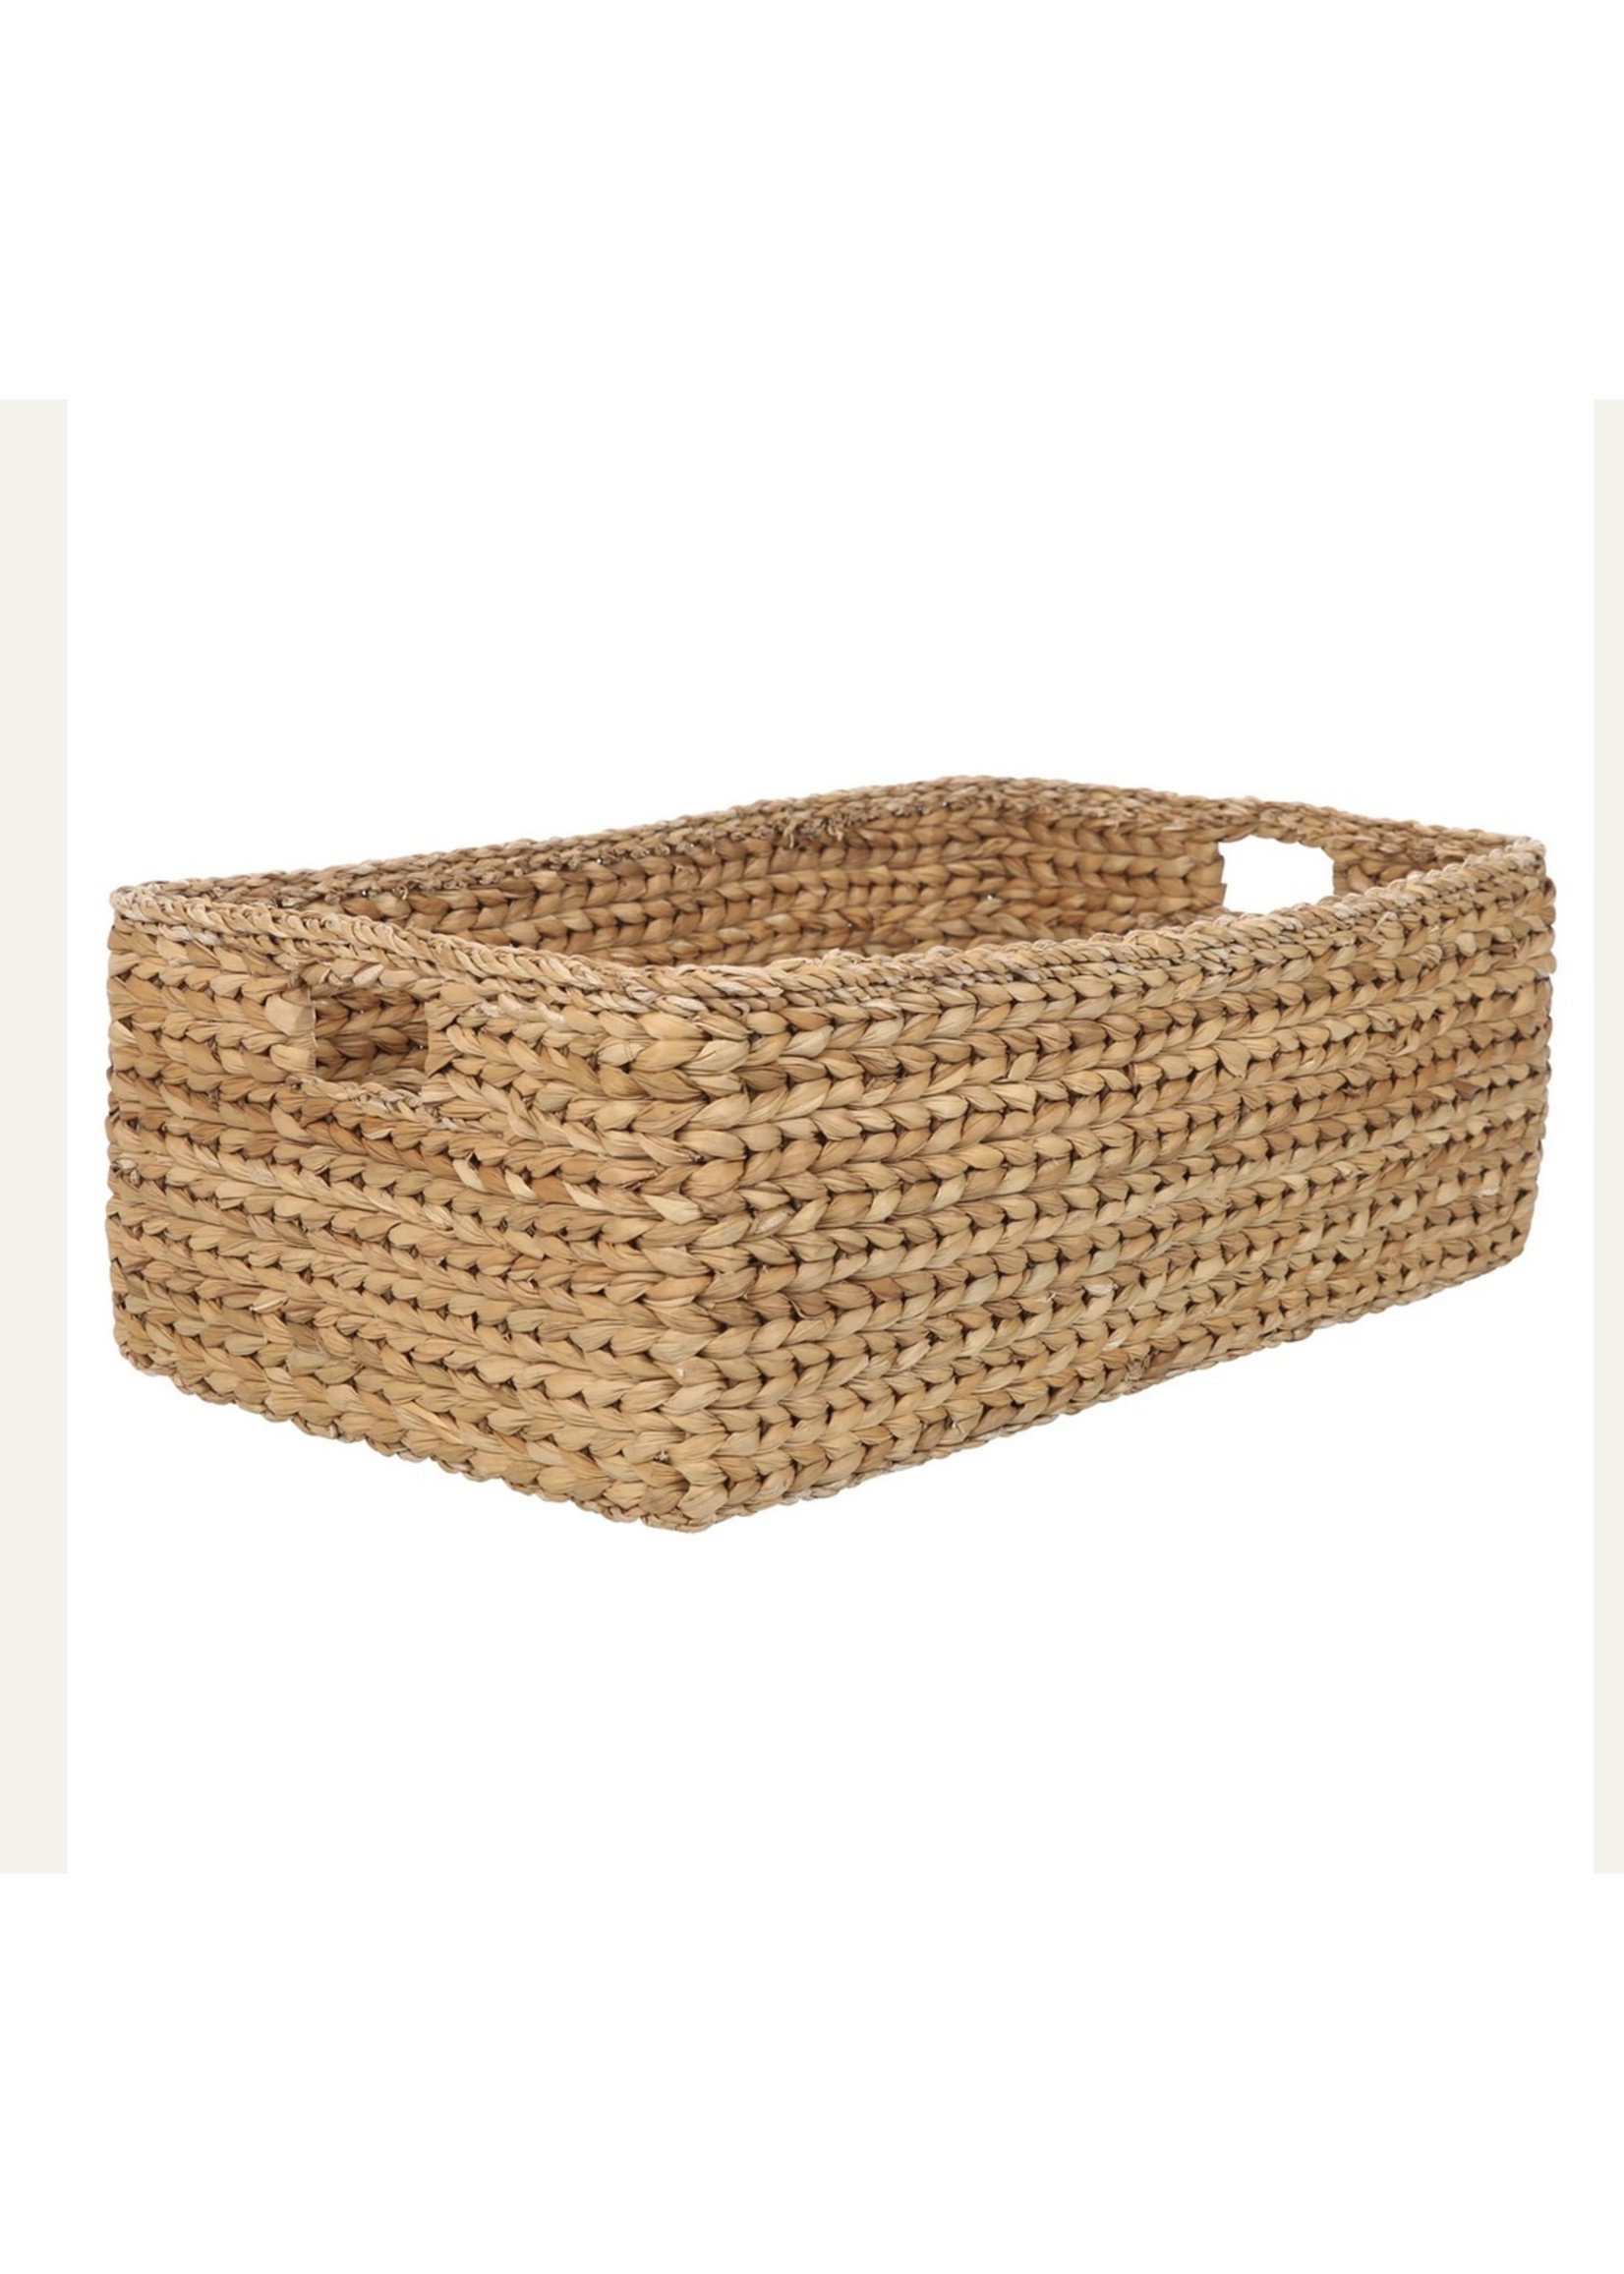 Yoshiko Seagrass basket rectangled Basail L: L33 x W28 x H19